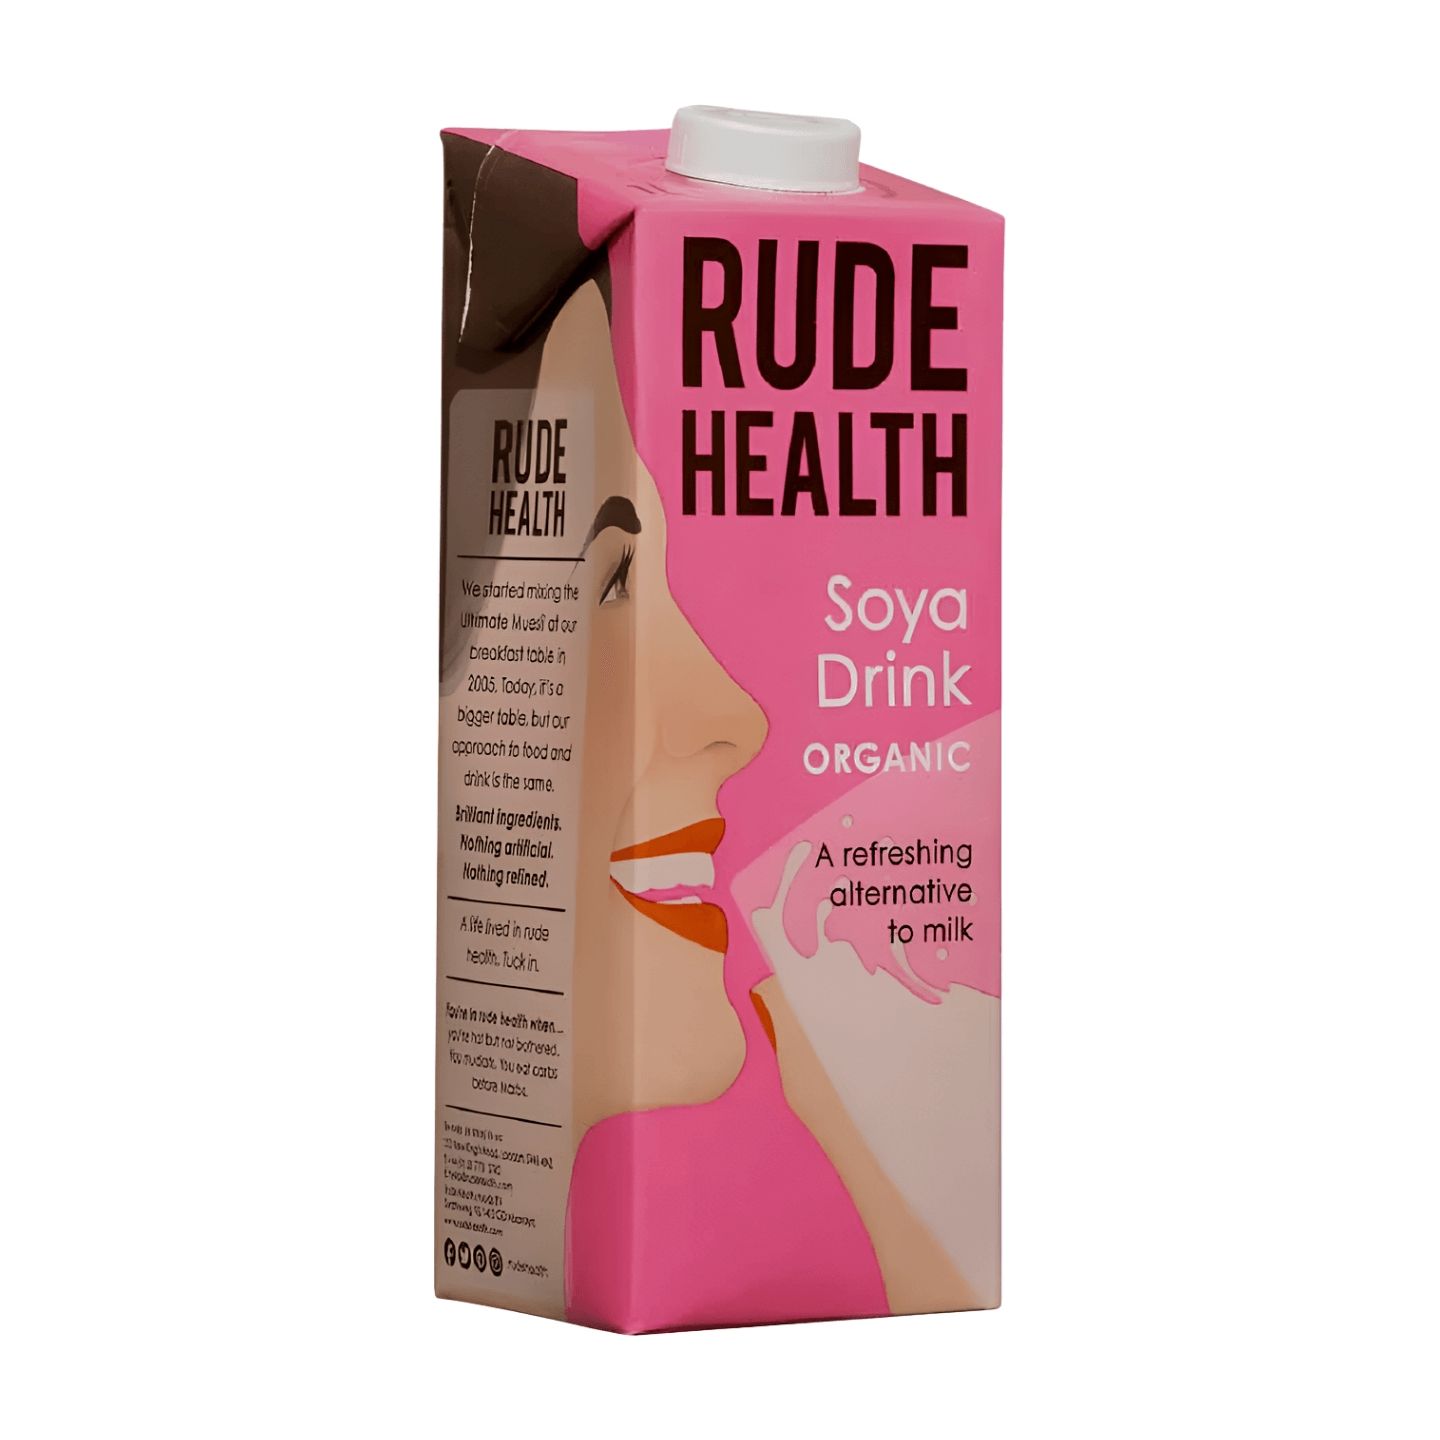 Rude Health Soya Drink